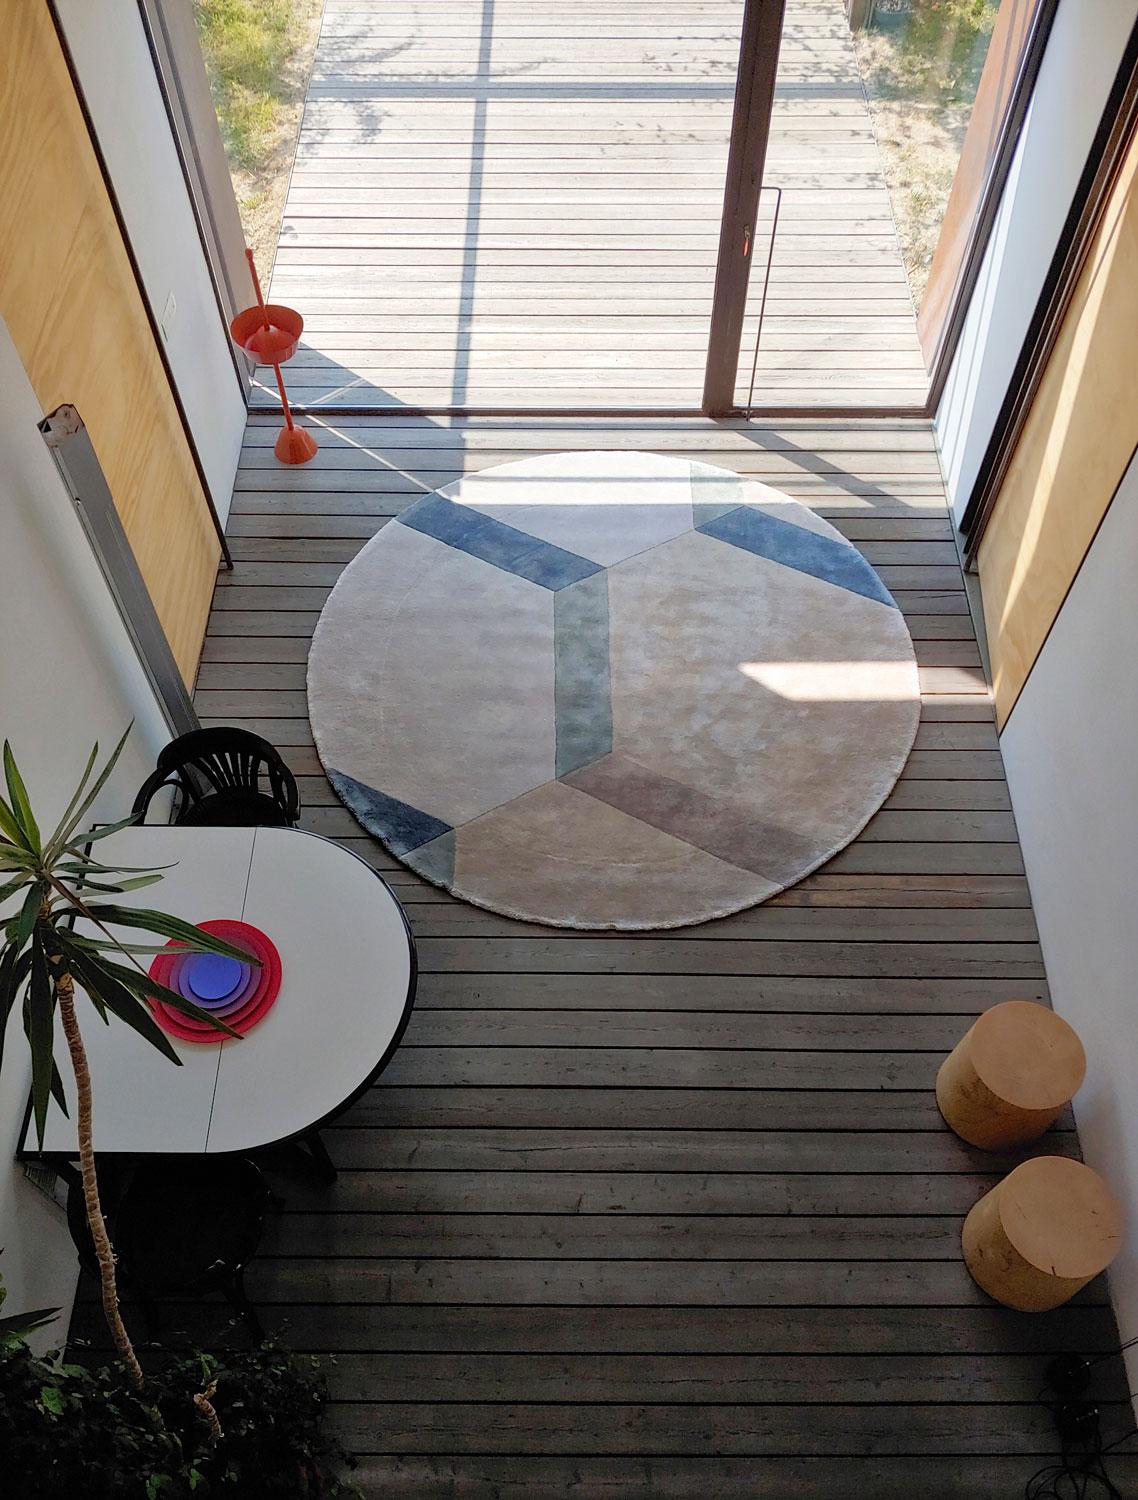 Die Bodenplatte Cobblestone wurde in einem speziellen geometrischen Motiv realisiert, das sich an den typischen Platz- und Straßenbelägen des italienischen Pionierunternehmens im Bereich der zeitgenössischen Bodenbeläge G.TDESIGN orientiert.

Die